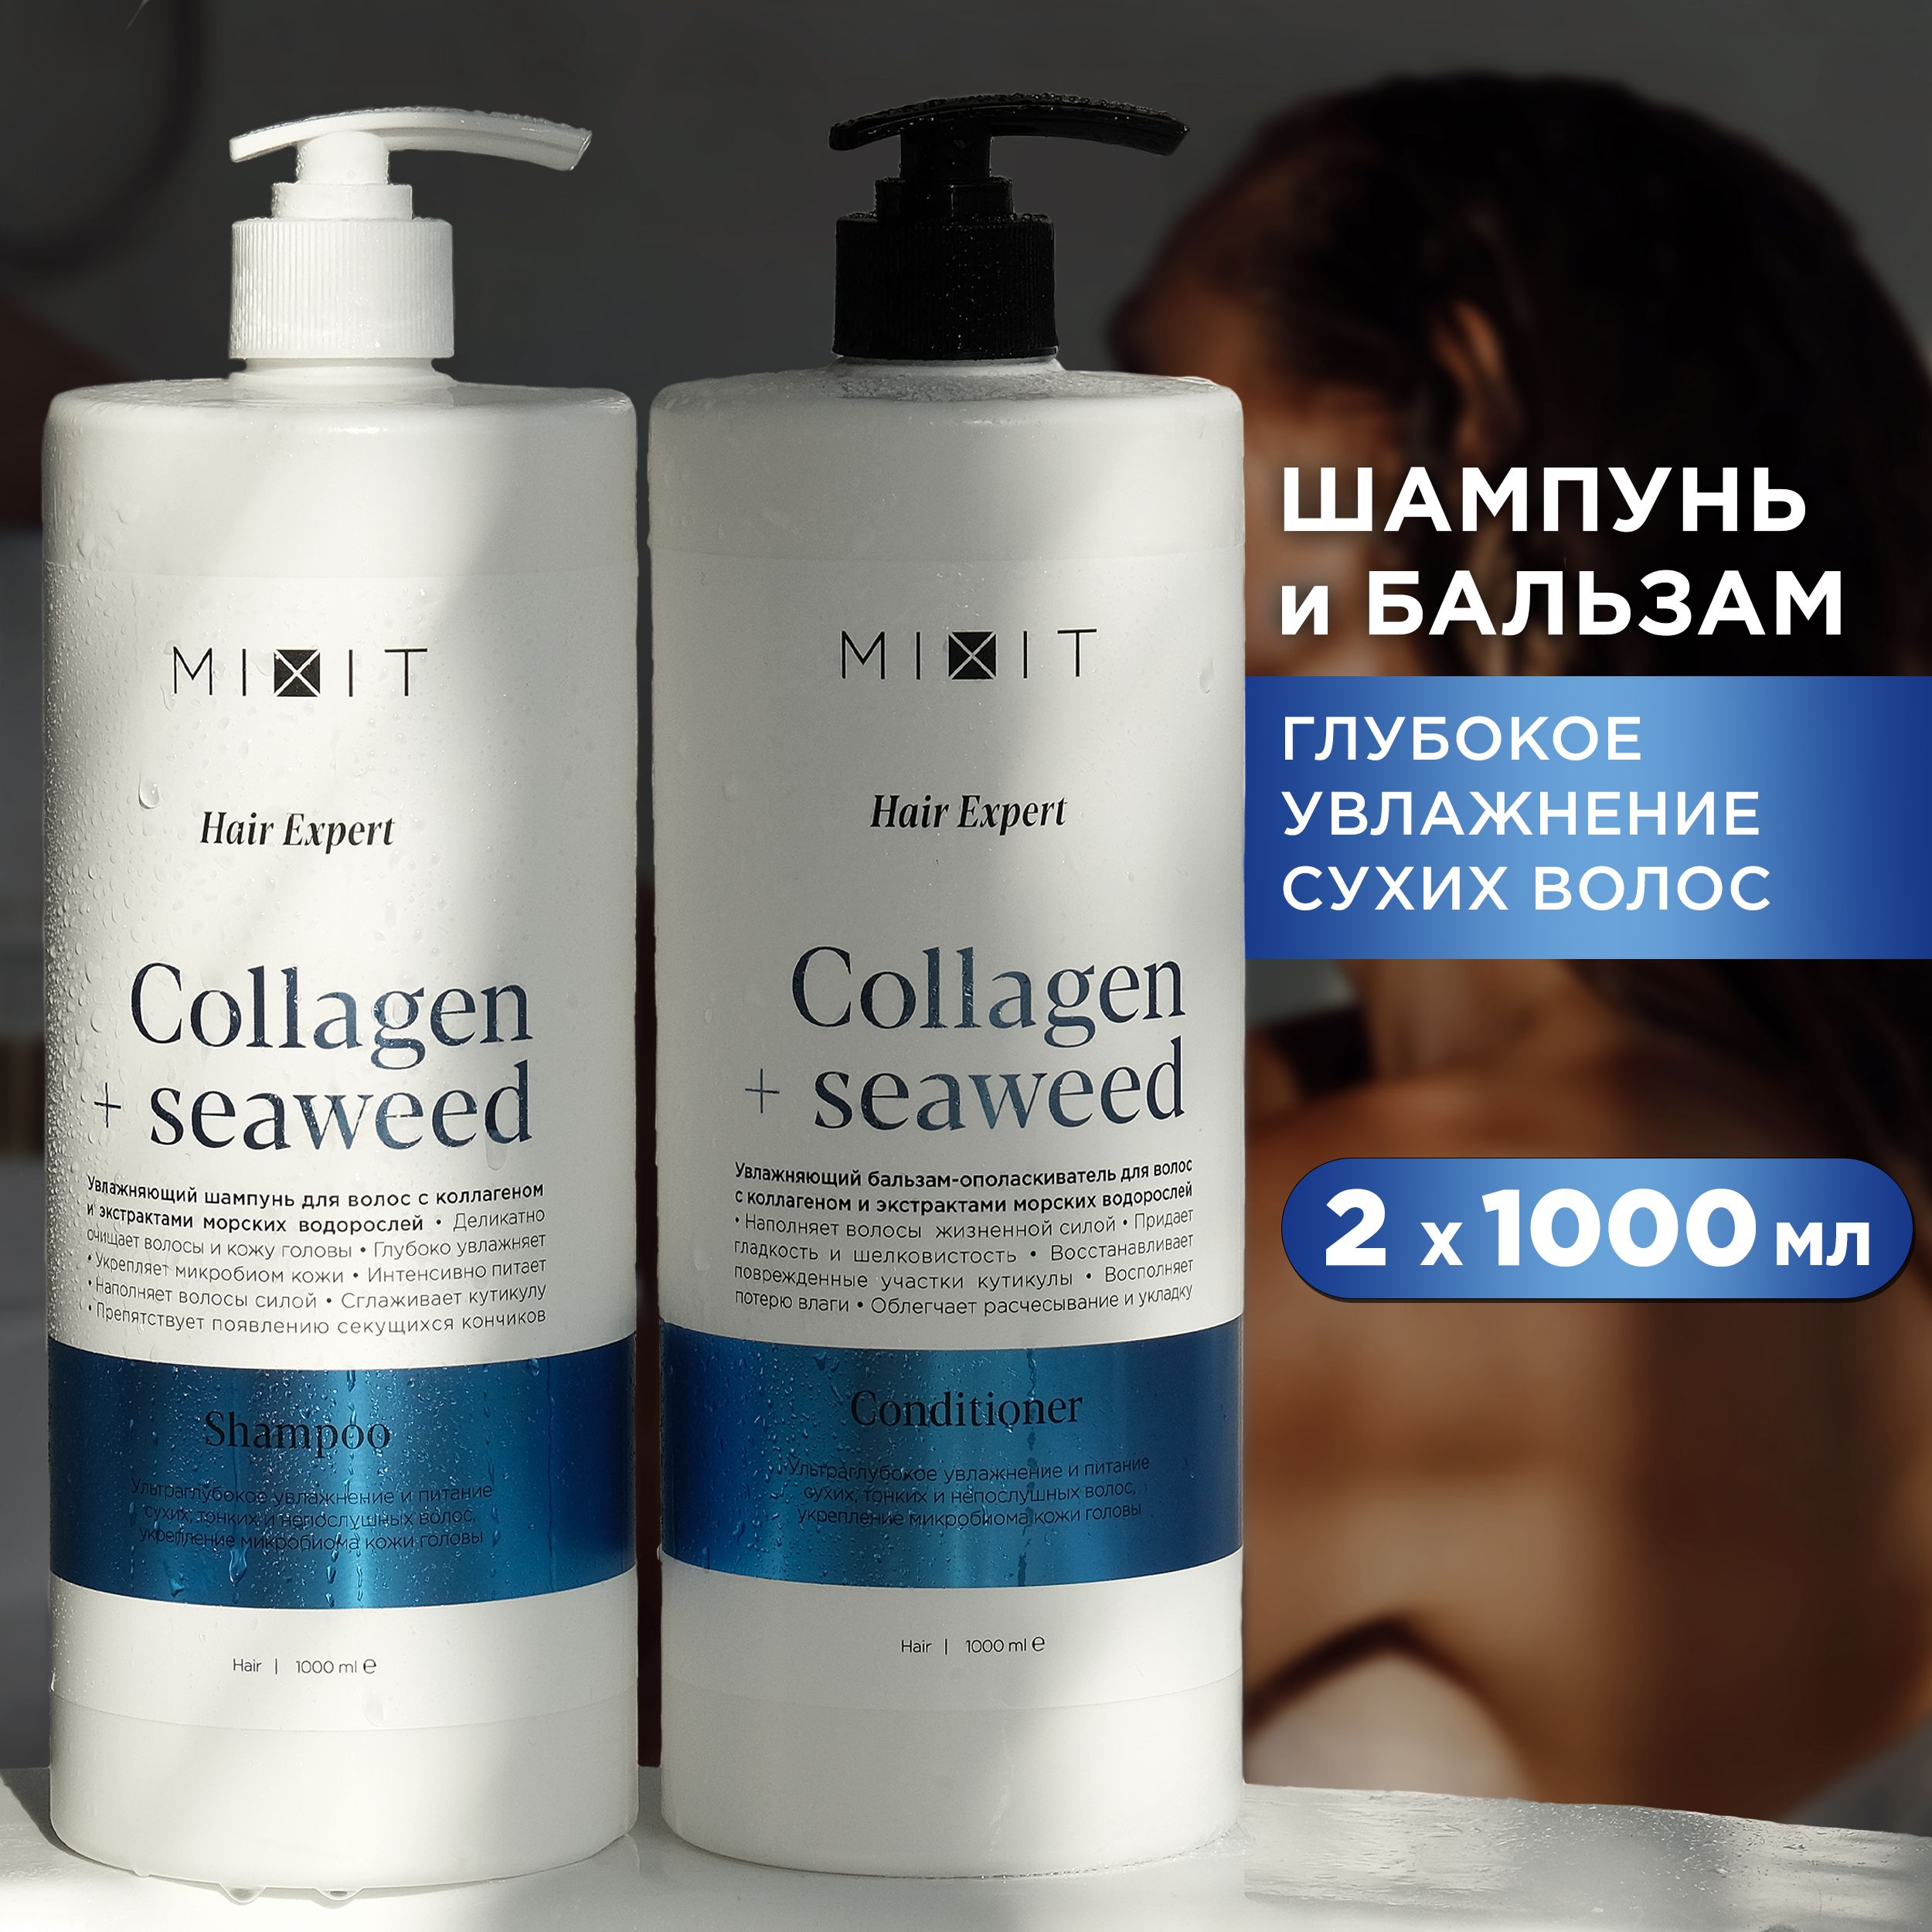 Набор для волос MIXIT шампунь и бальзам для глубокого увлажнения сухих волос 2 х 1000 мл набор для волос mixit hair expert шампунь бальзам ополаскиватель сыворотка